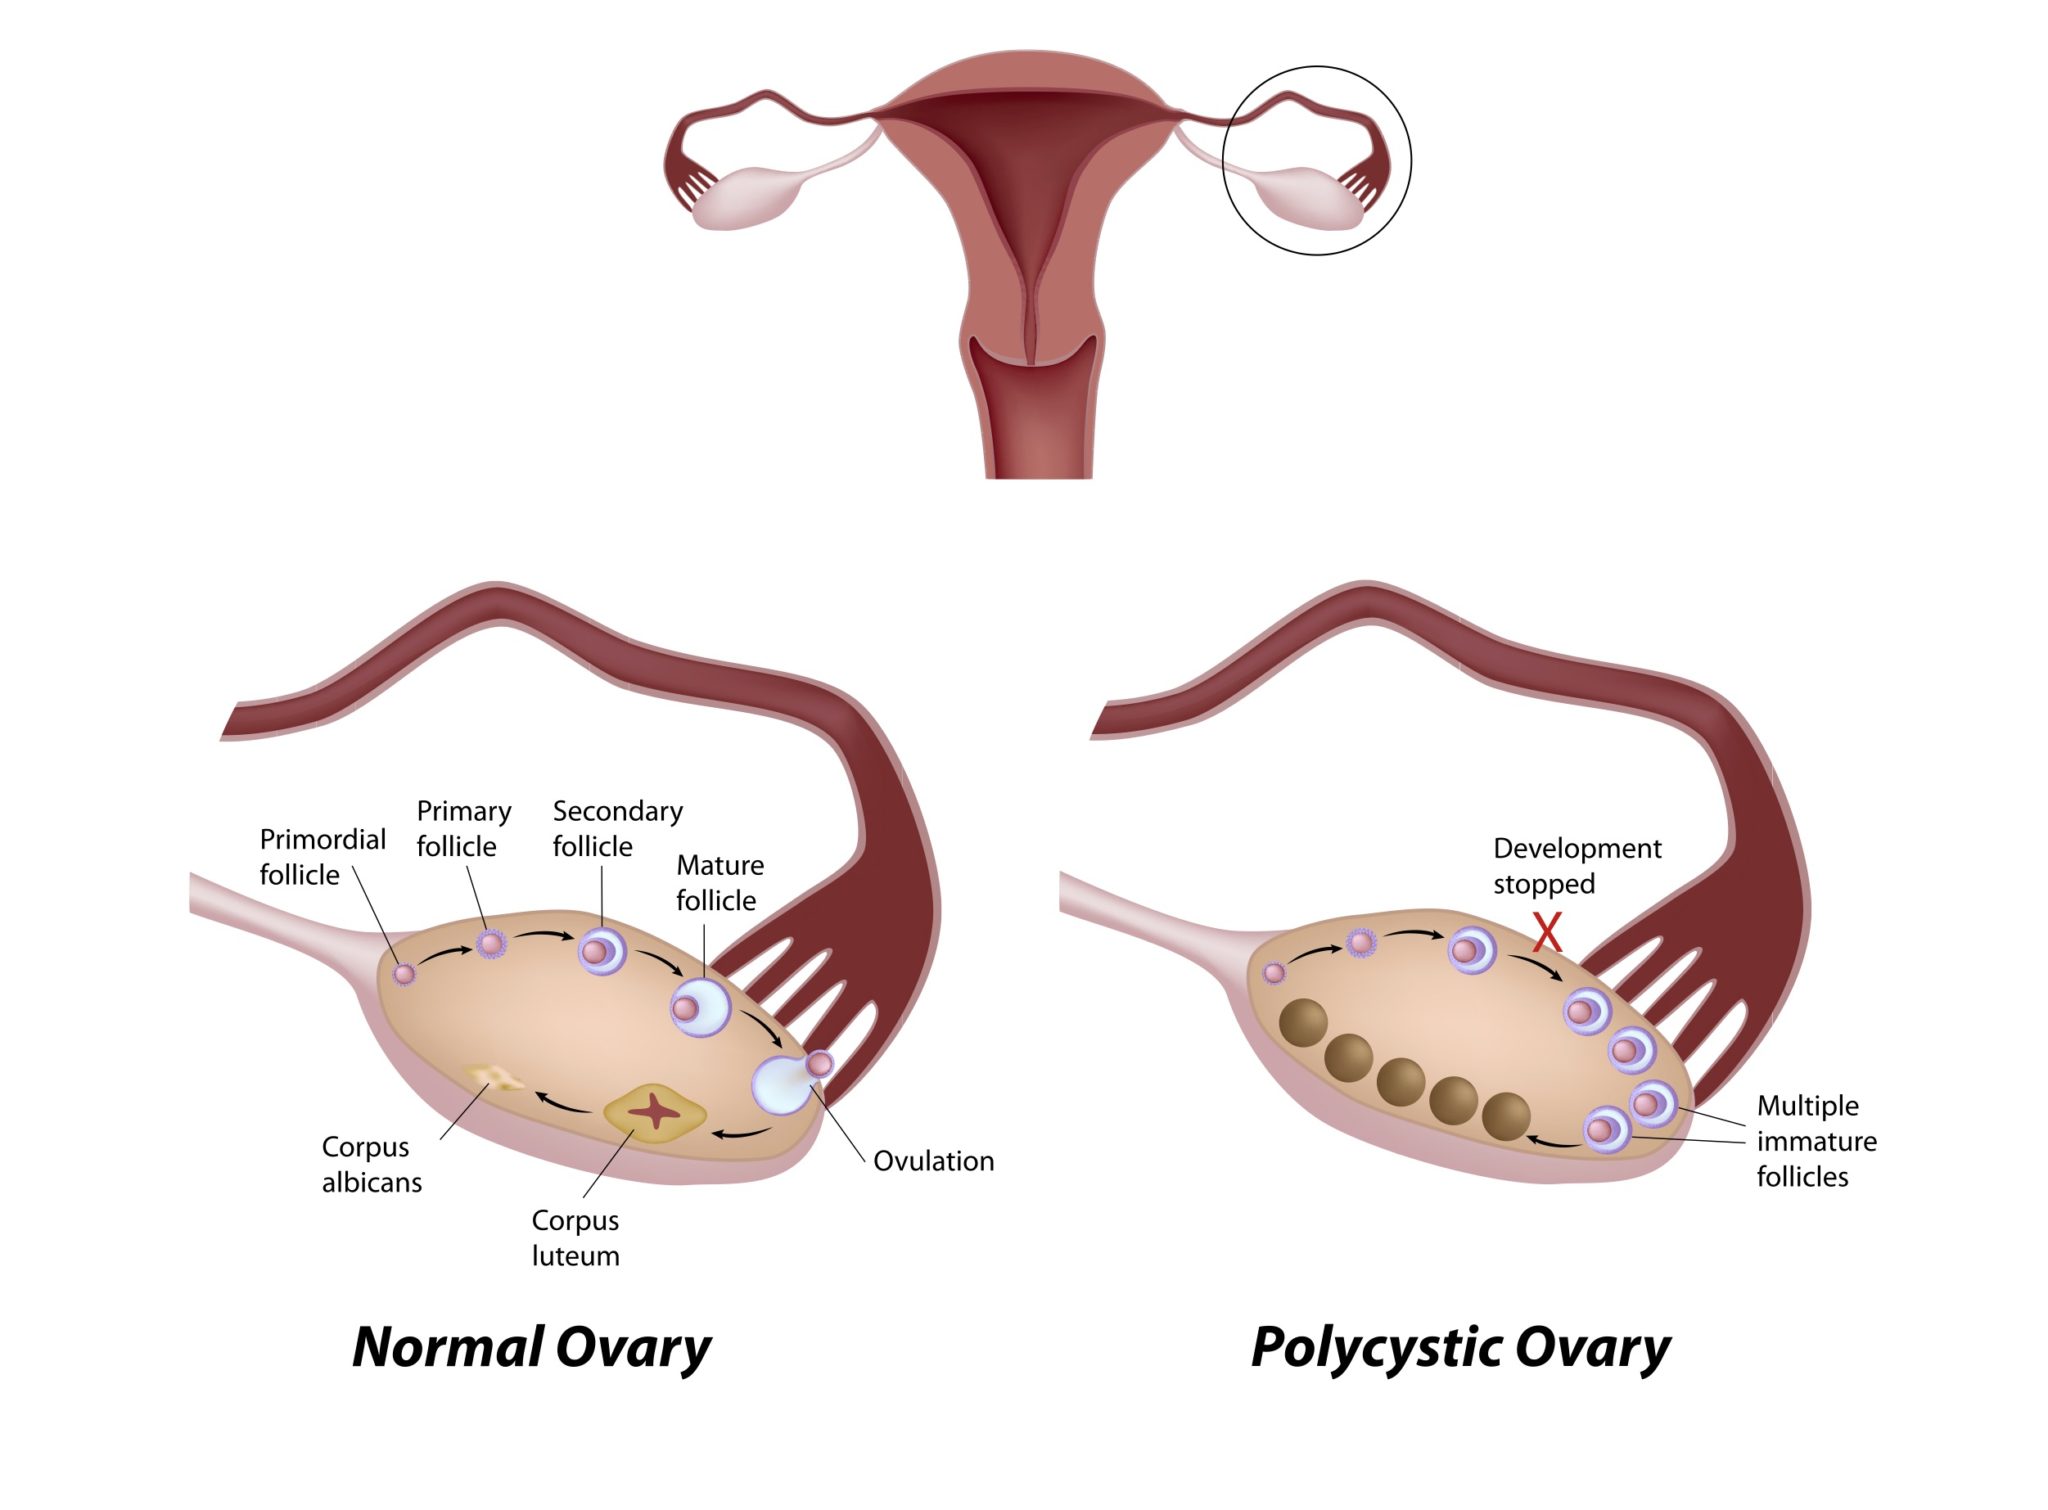 多 嚢胞 性 卵巣 症候群 流産 し やすい